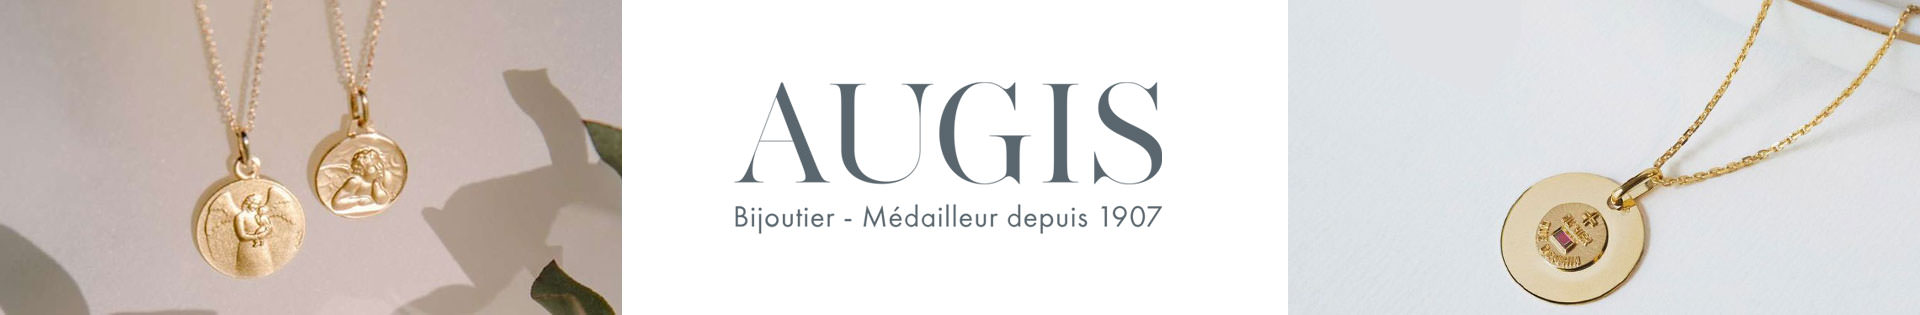 Marques de bijoux - A.Augis - Gourmette identité